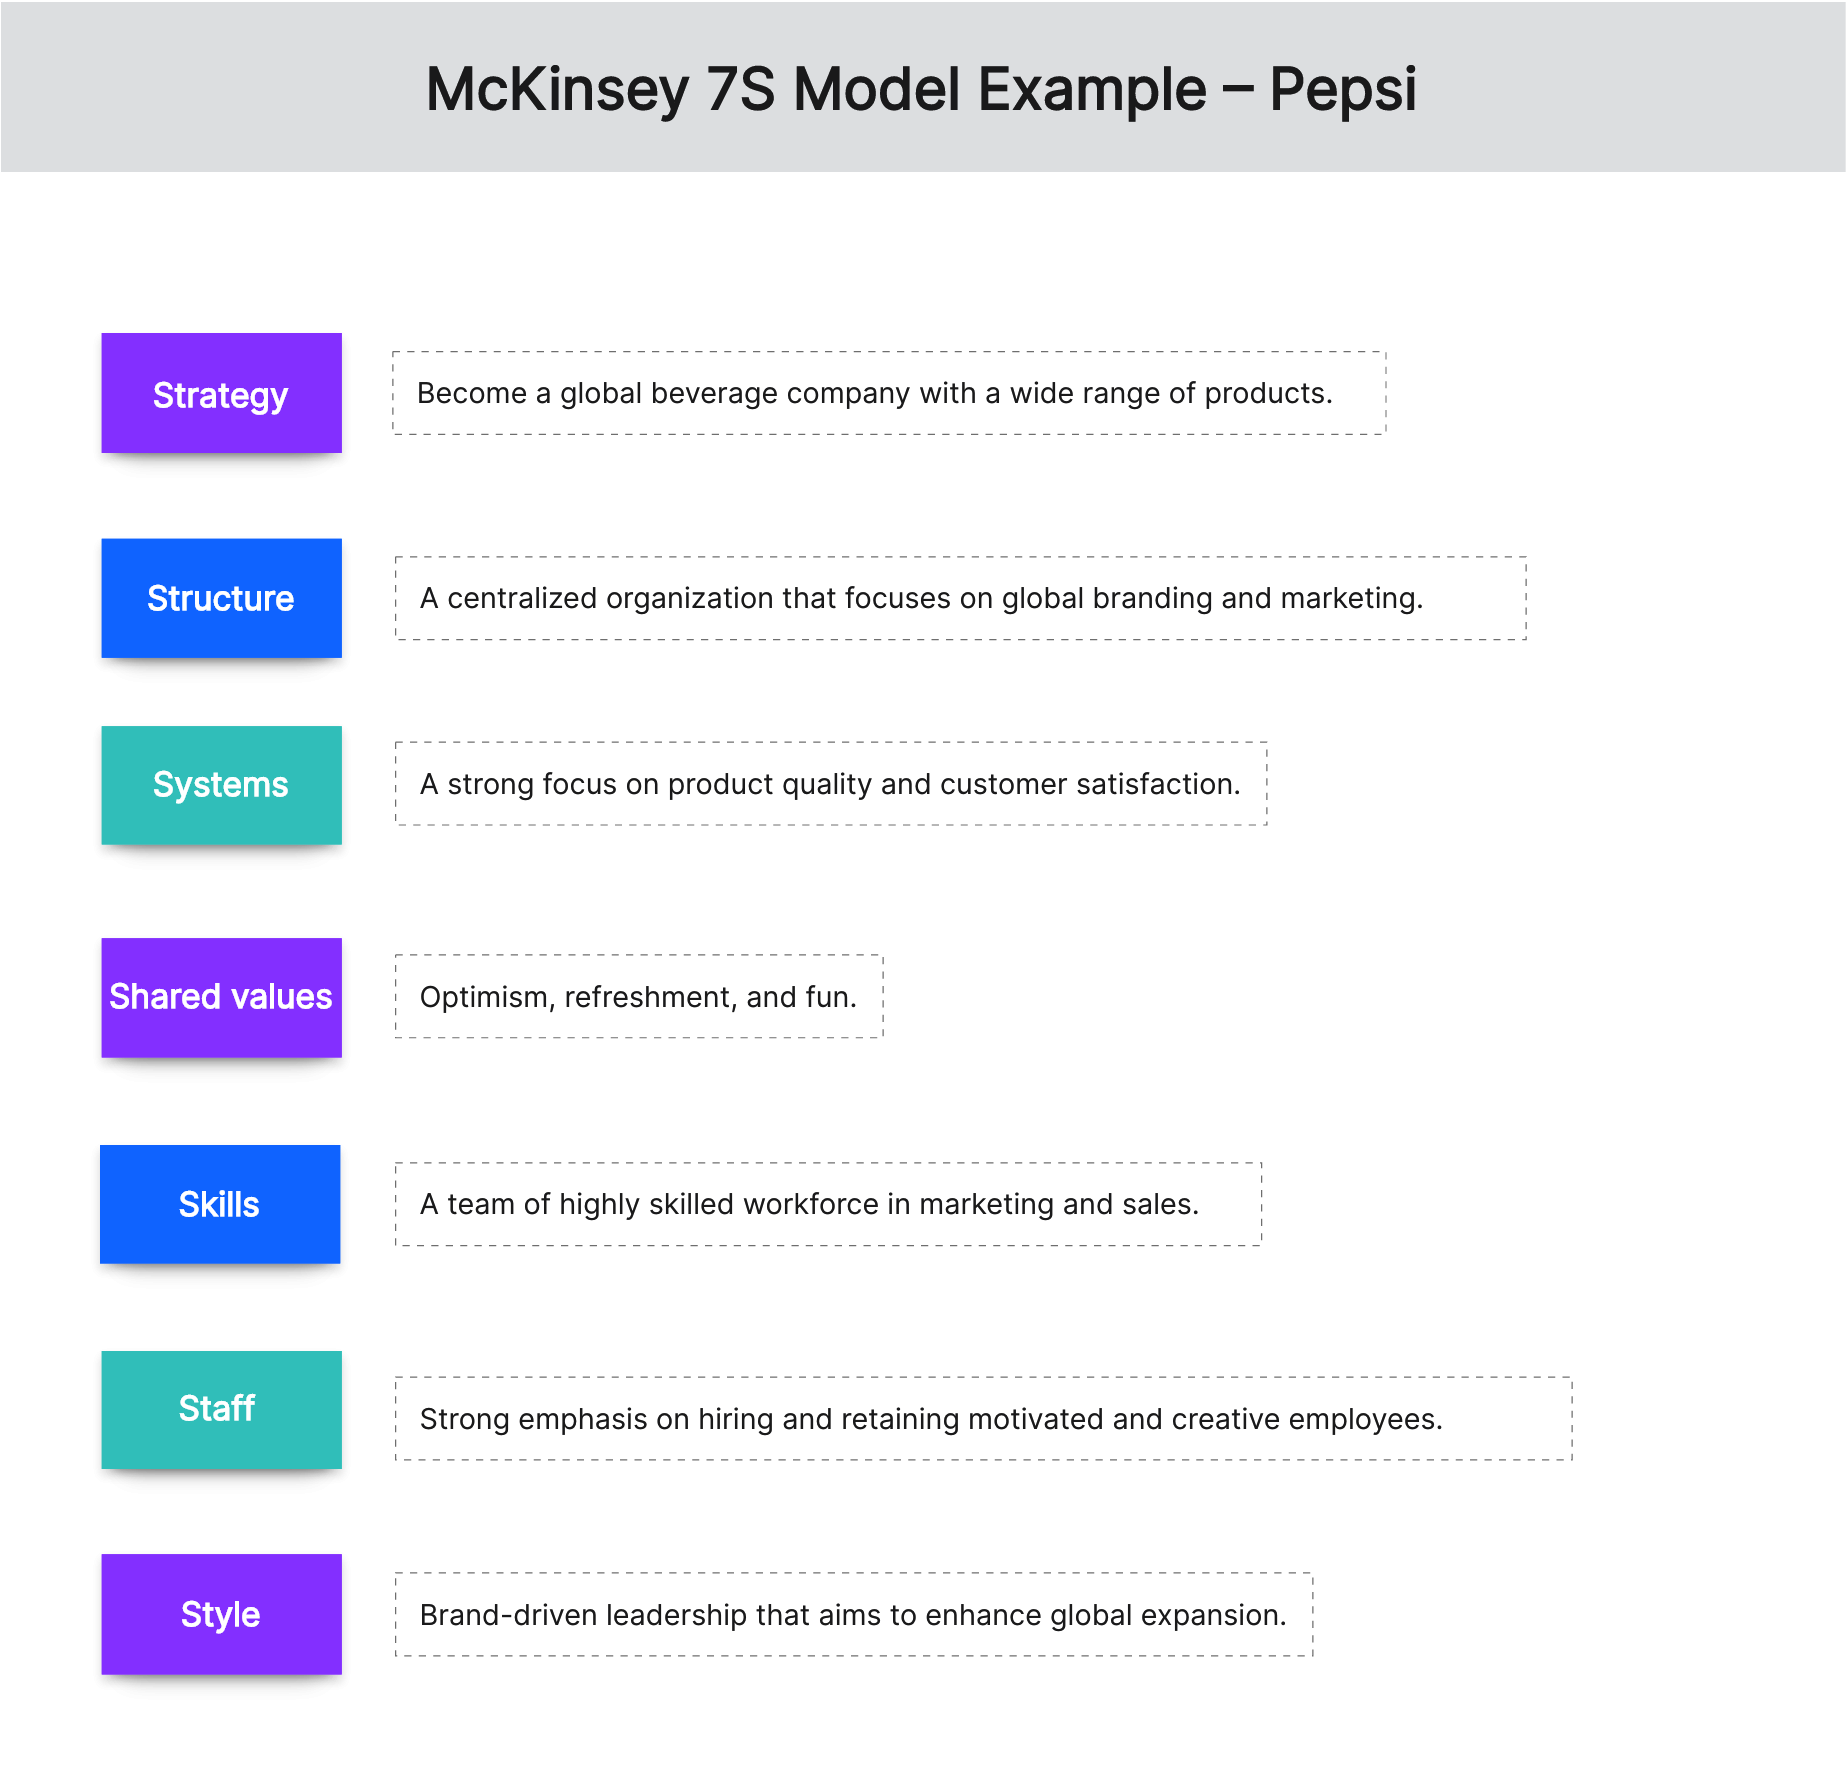 mckinsey-7s-model-example-pepsi